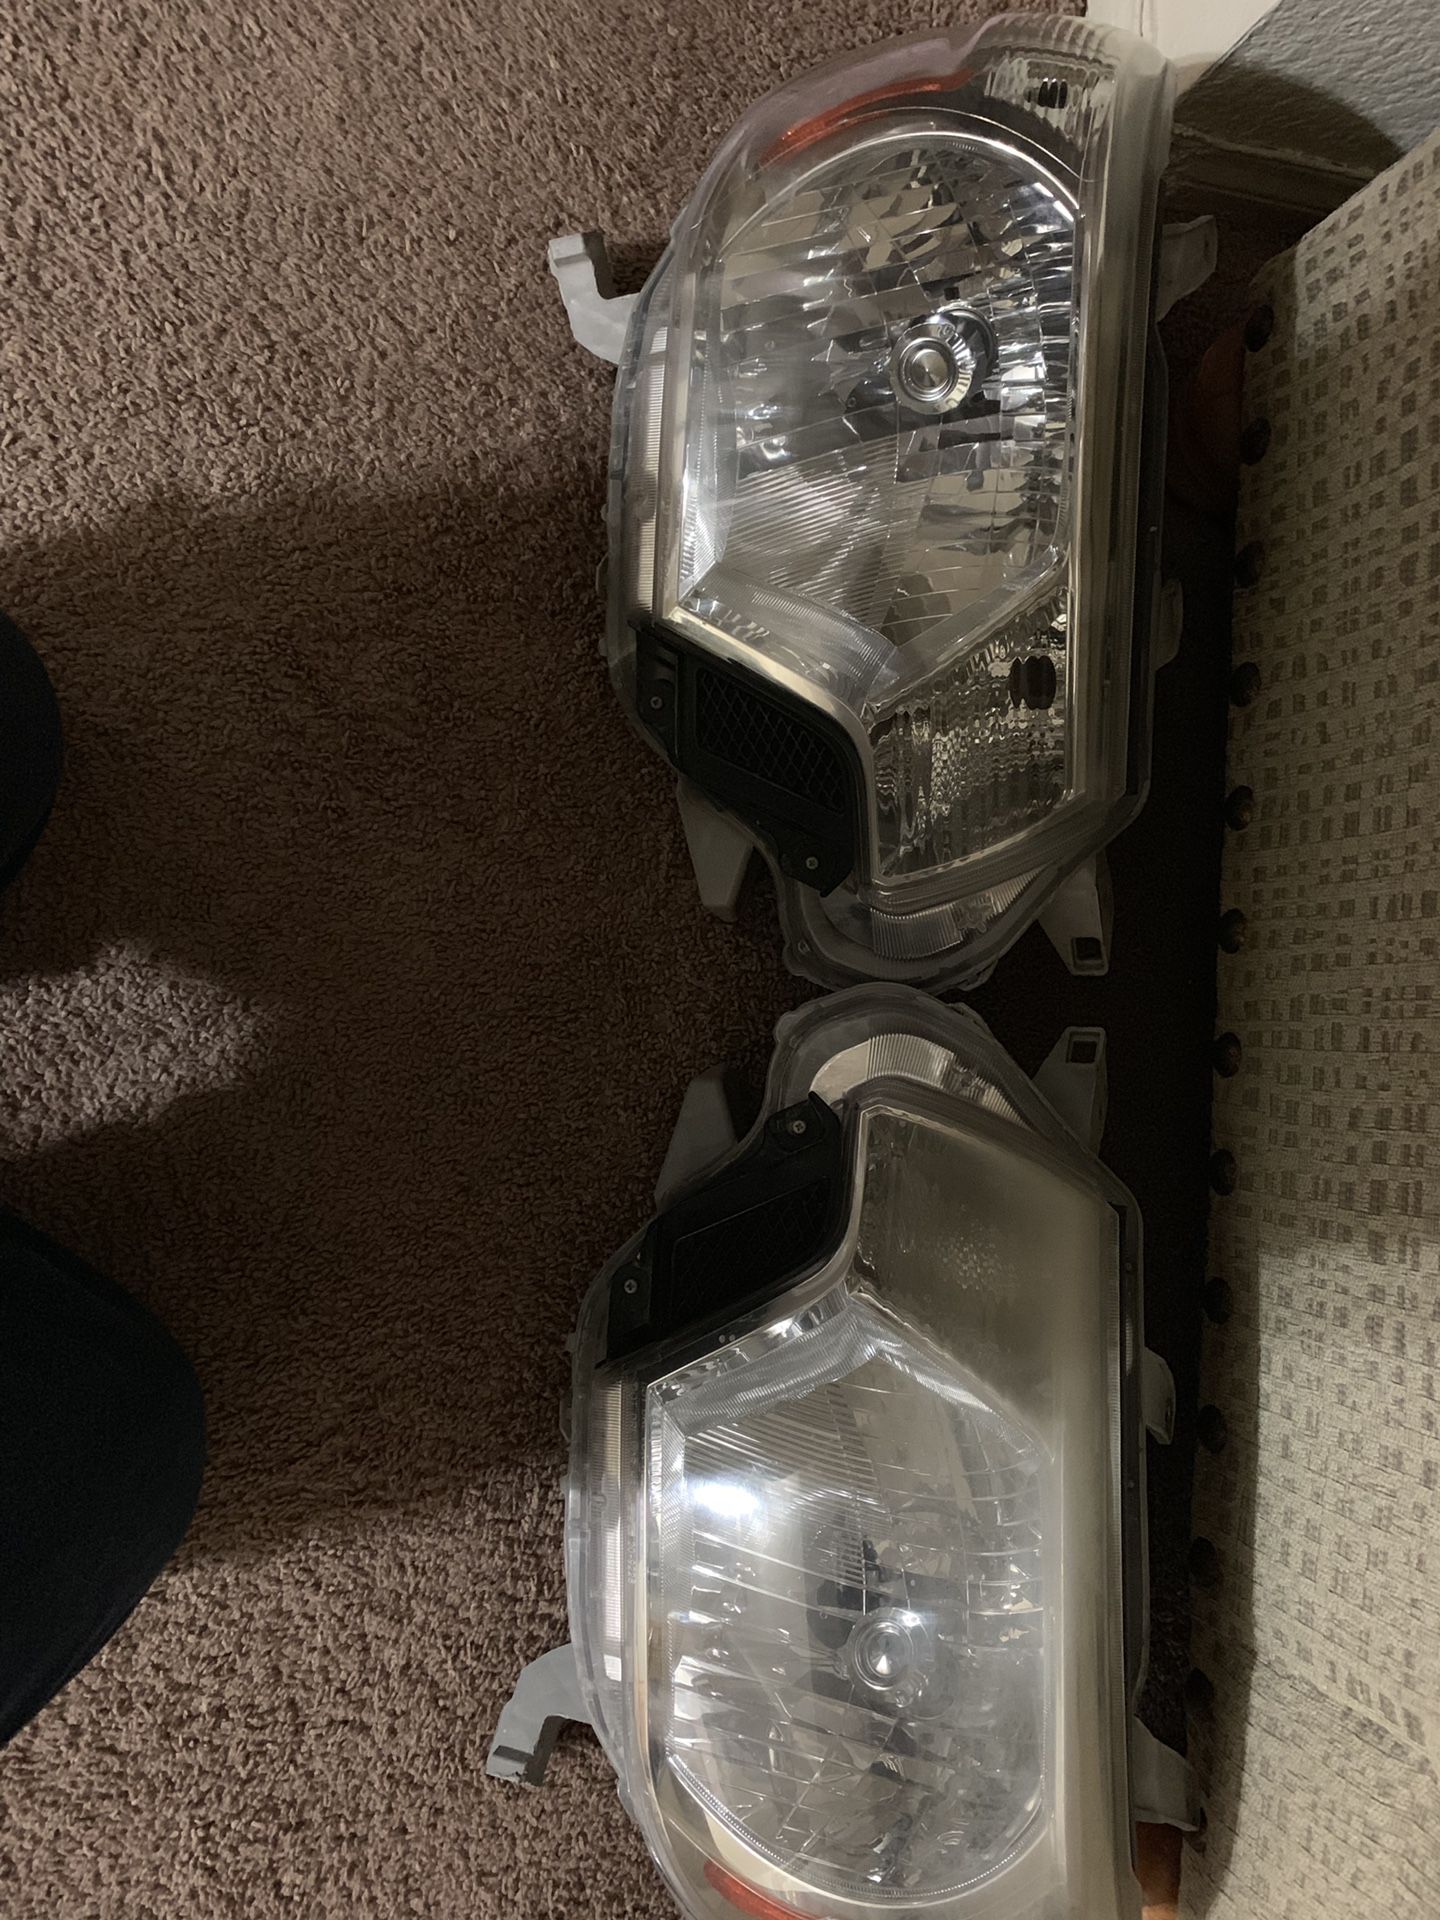 2014 Tacoma headlights used